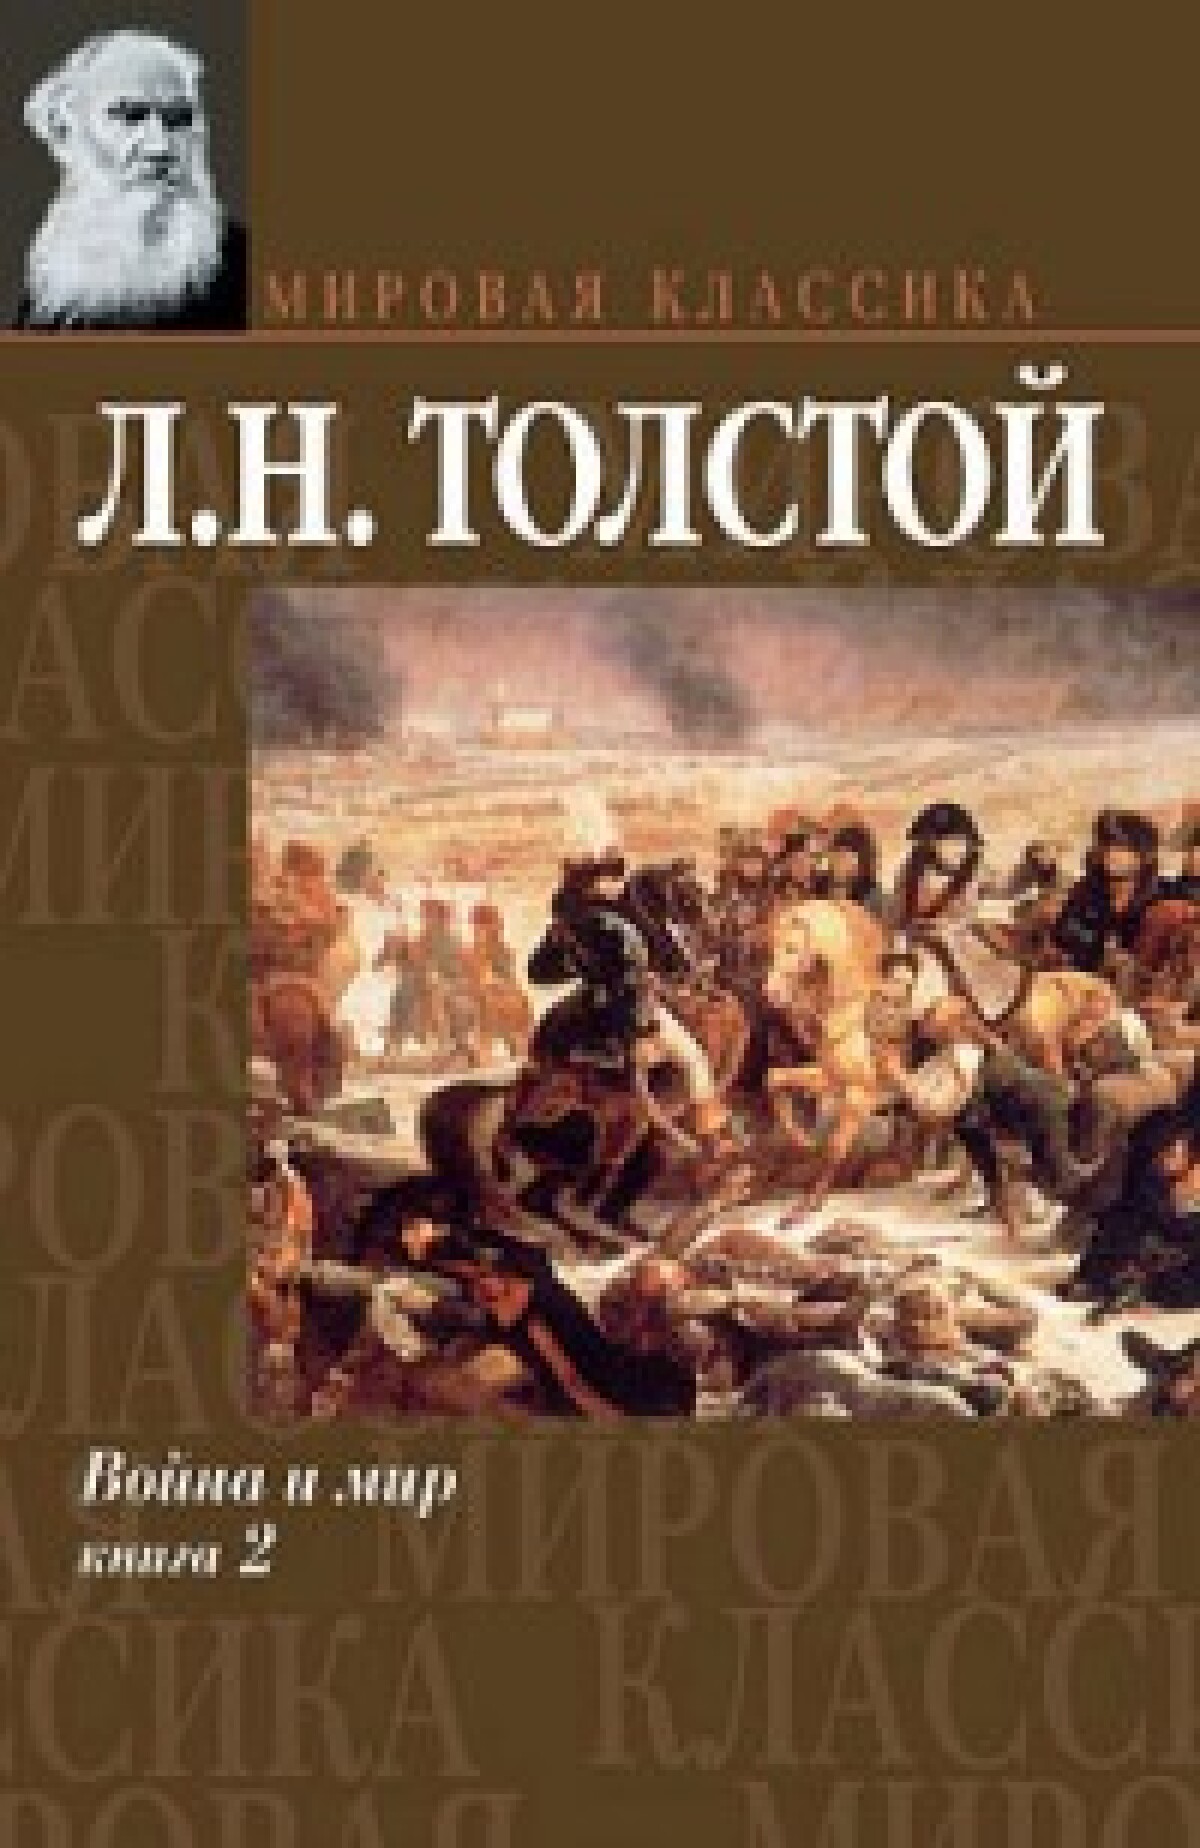 Толстой в отечественной и мировой литературе